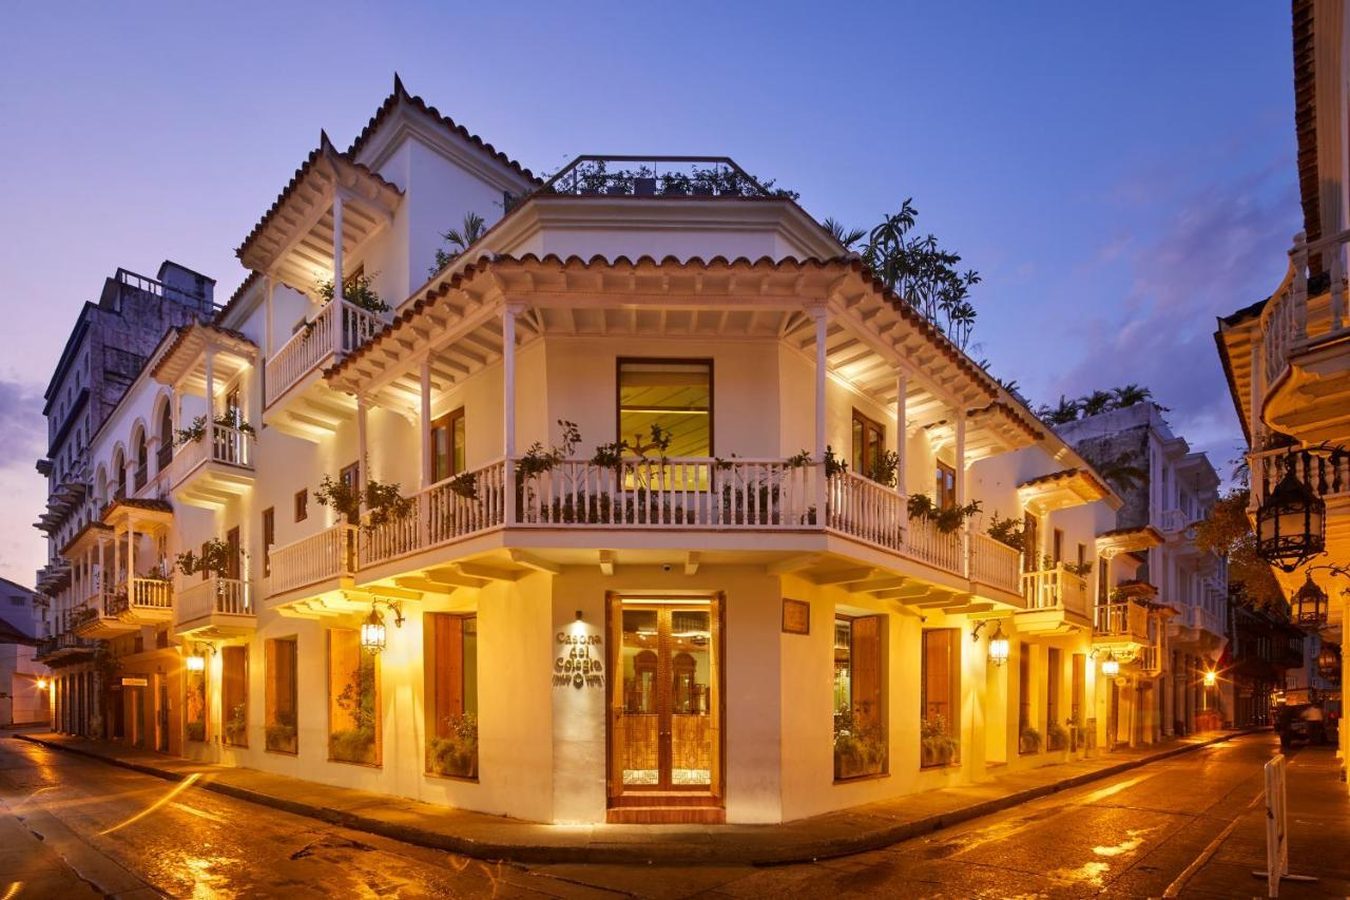 Hotel Casona del Colegio Cartagena - Colombia